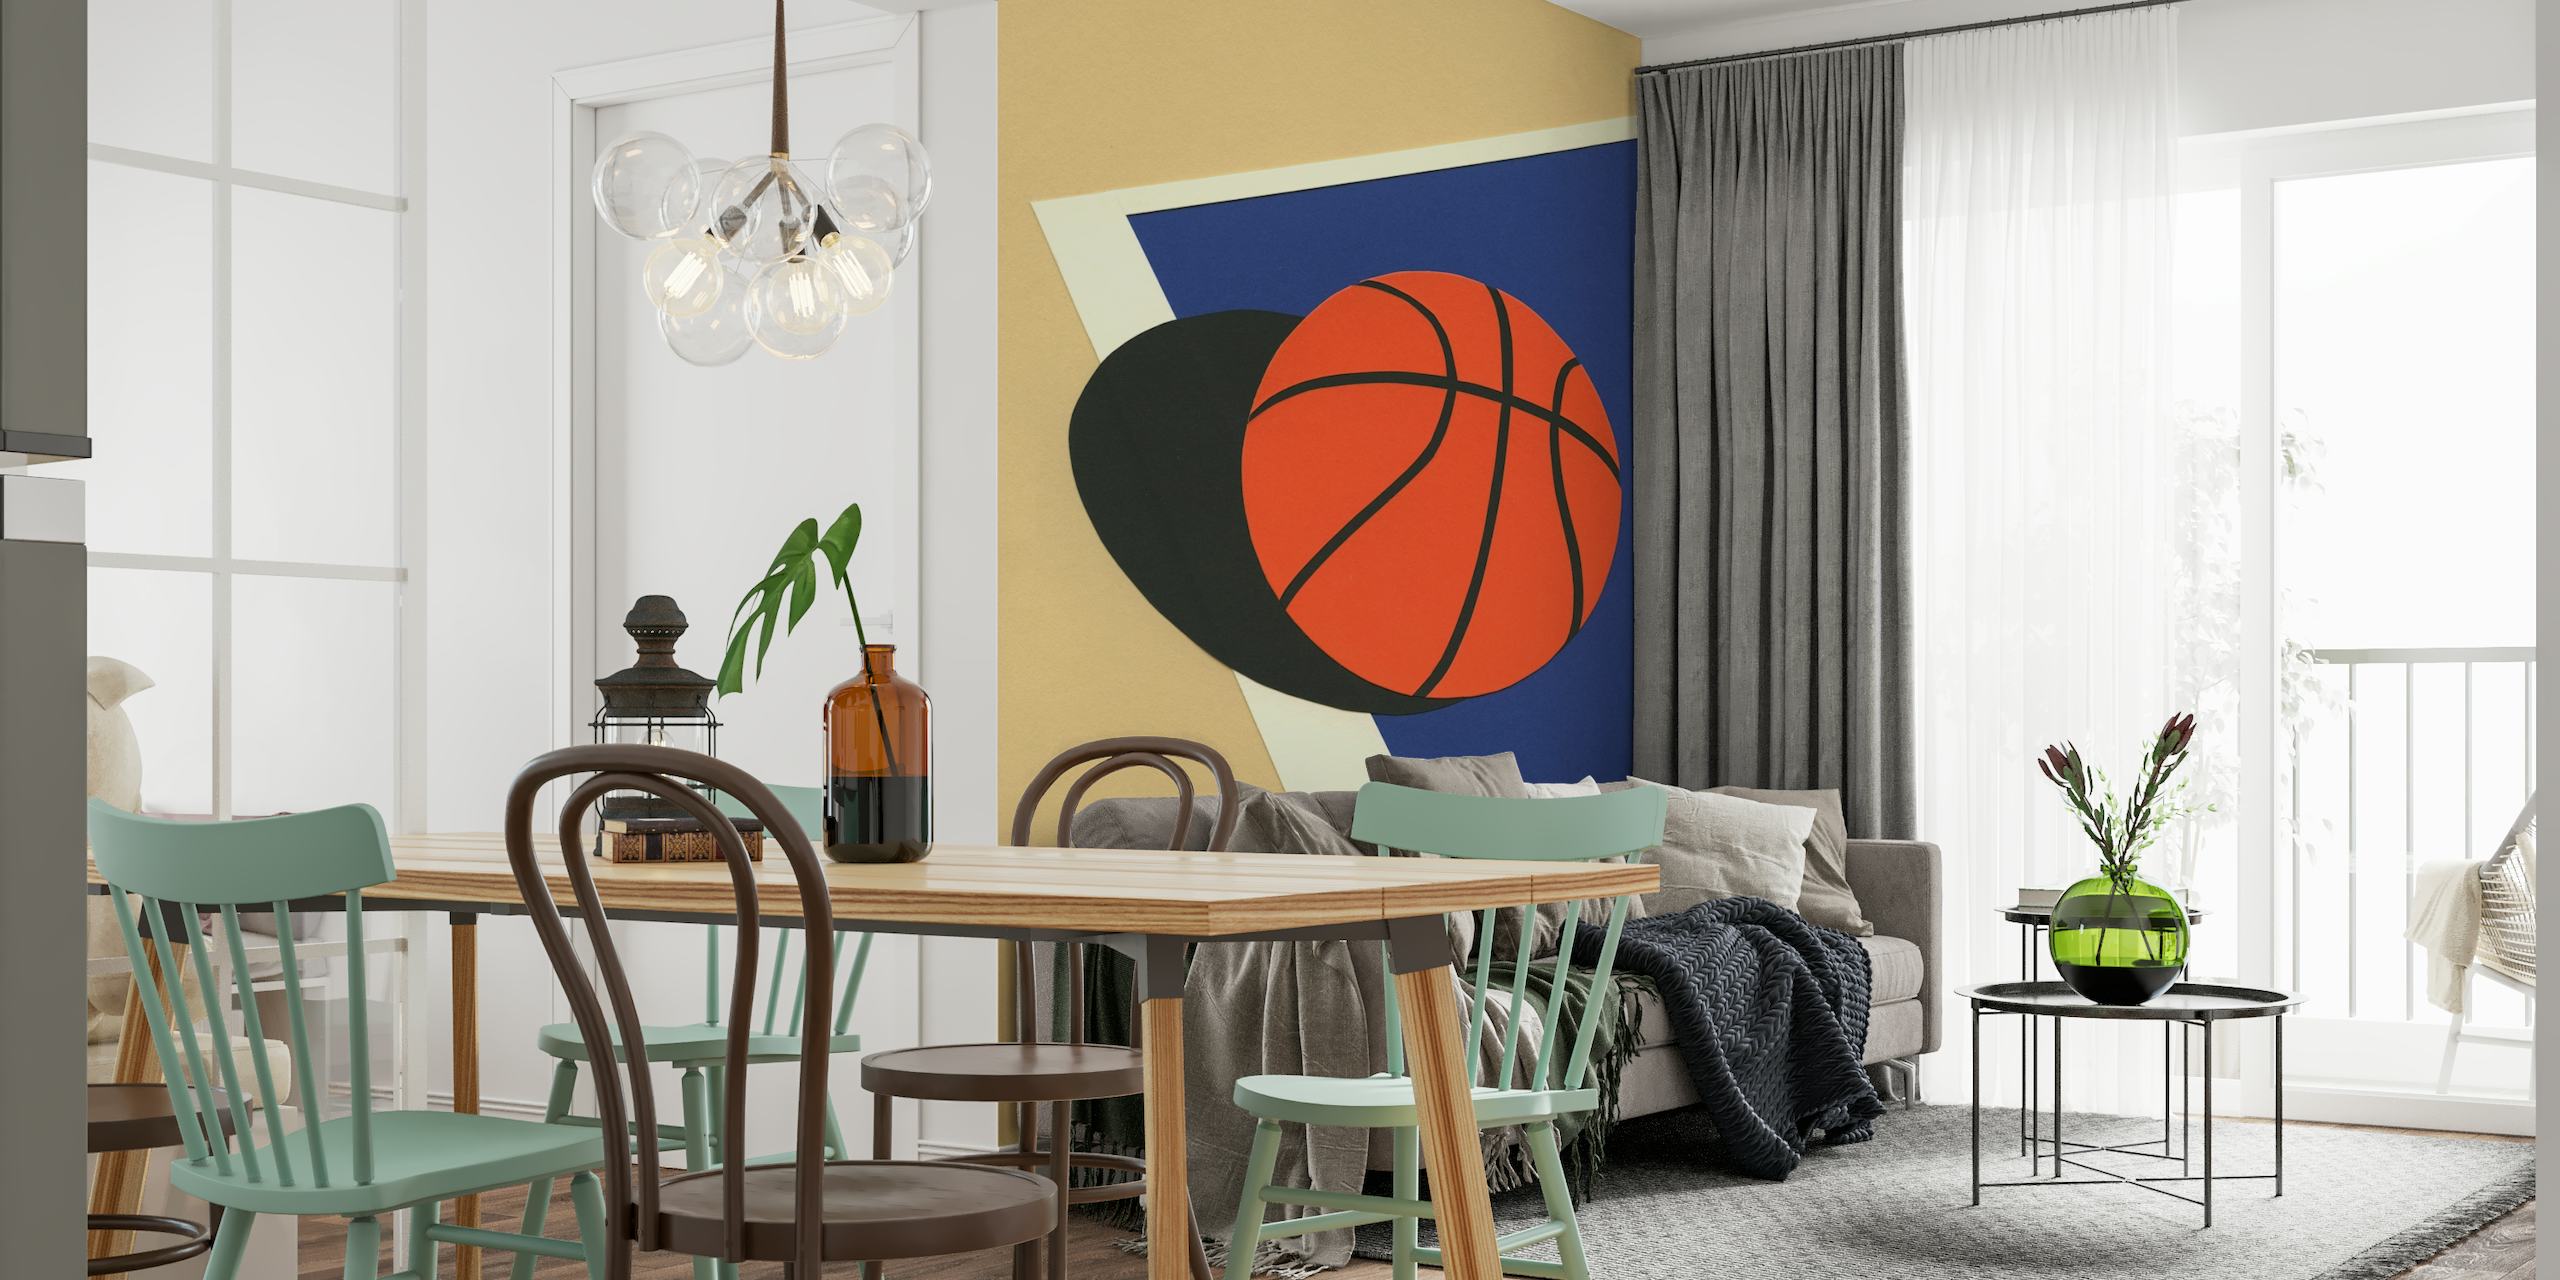 Oakland Basketball Team papel pintado